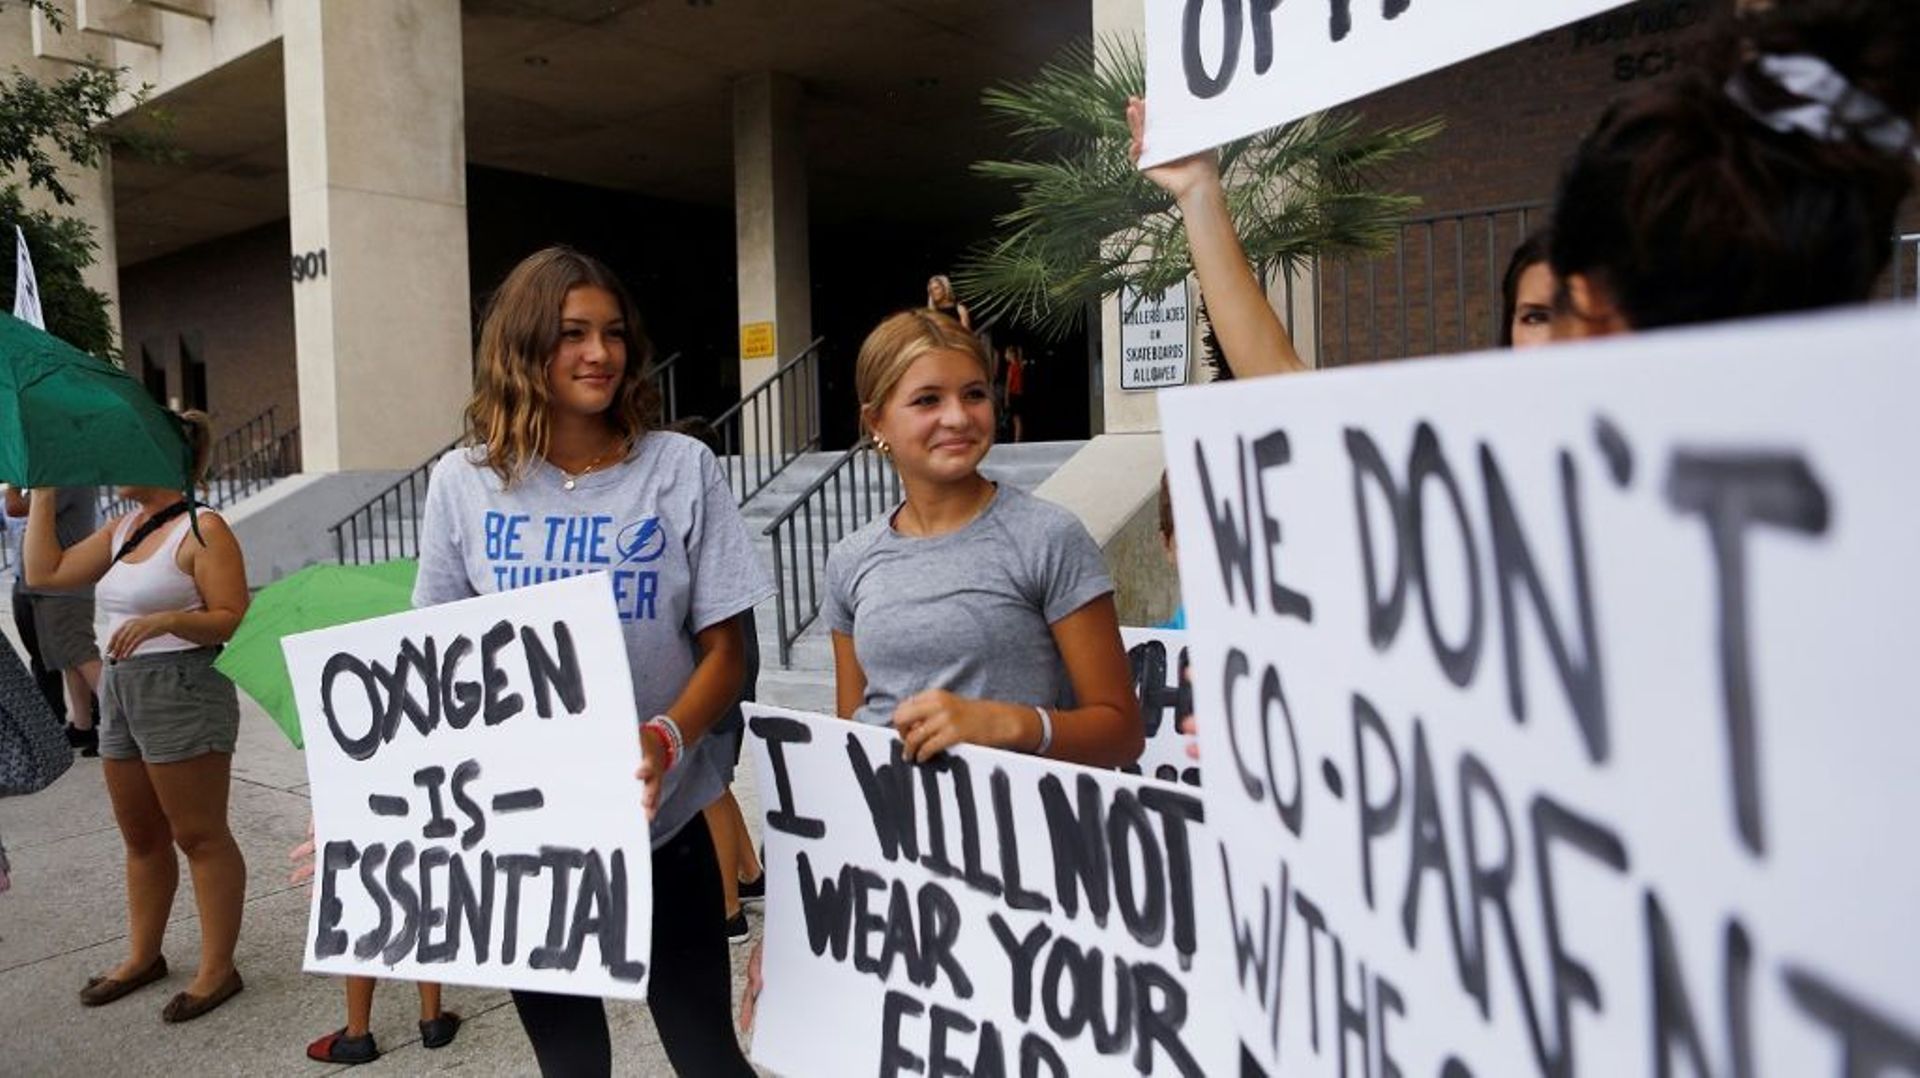 Des familles protestent contre la possibilité du port du masque obligatoire à l’école, à Tampa, en Floride, le 27 juillet 2021